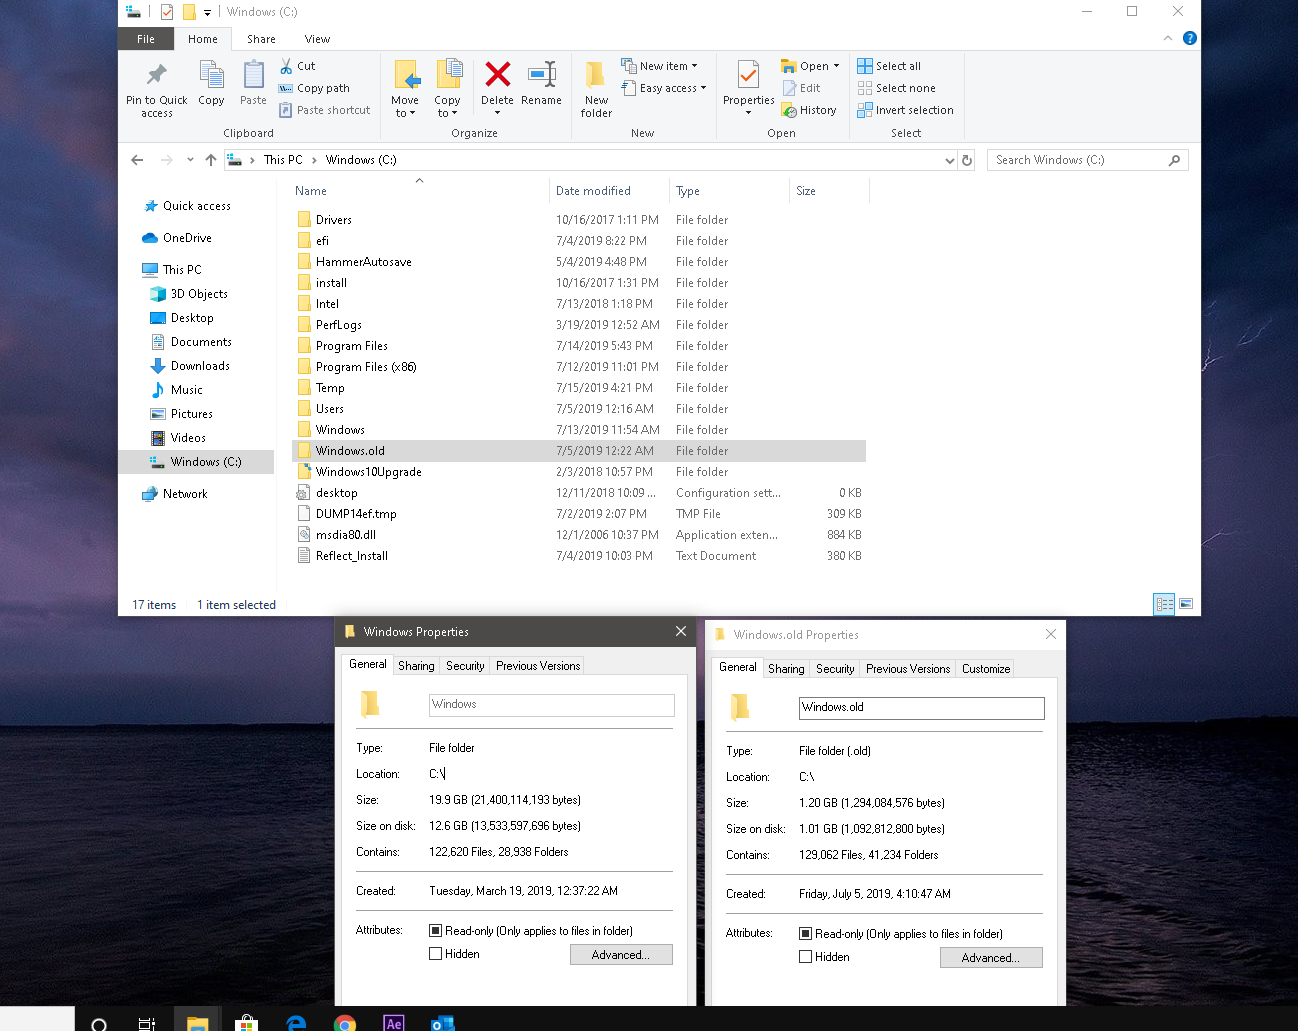 Windows.old is smaller than Windows 0f5d6de6-3af2-434d-87a0-f76616dd70ef?upload=true.png